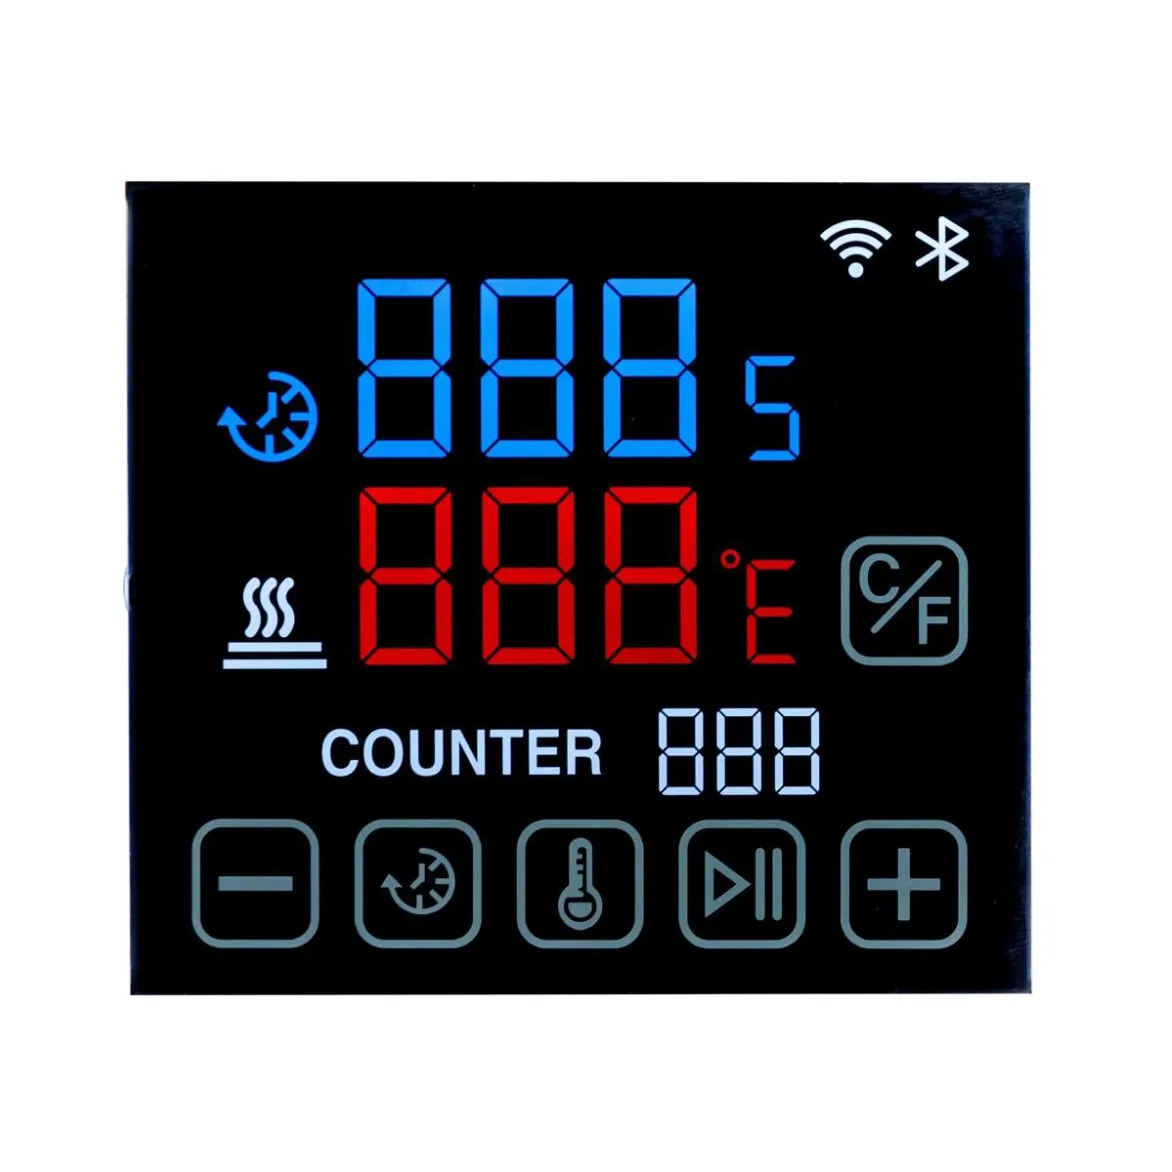 Pantalla LCD personalizada VA, monitor con temperatura amplia para termostato